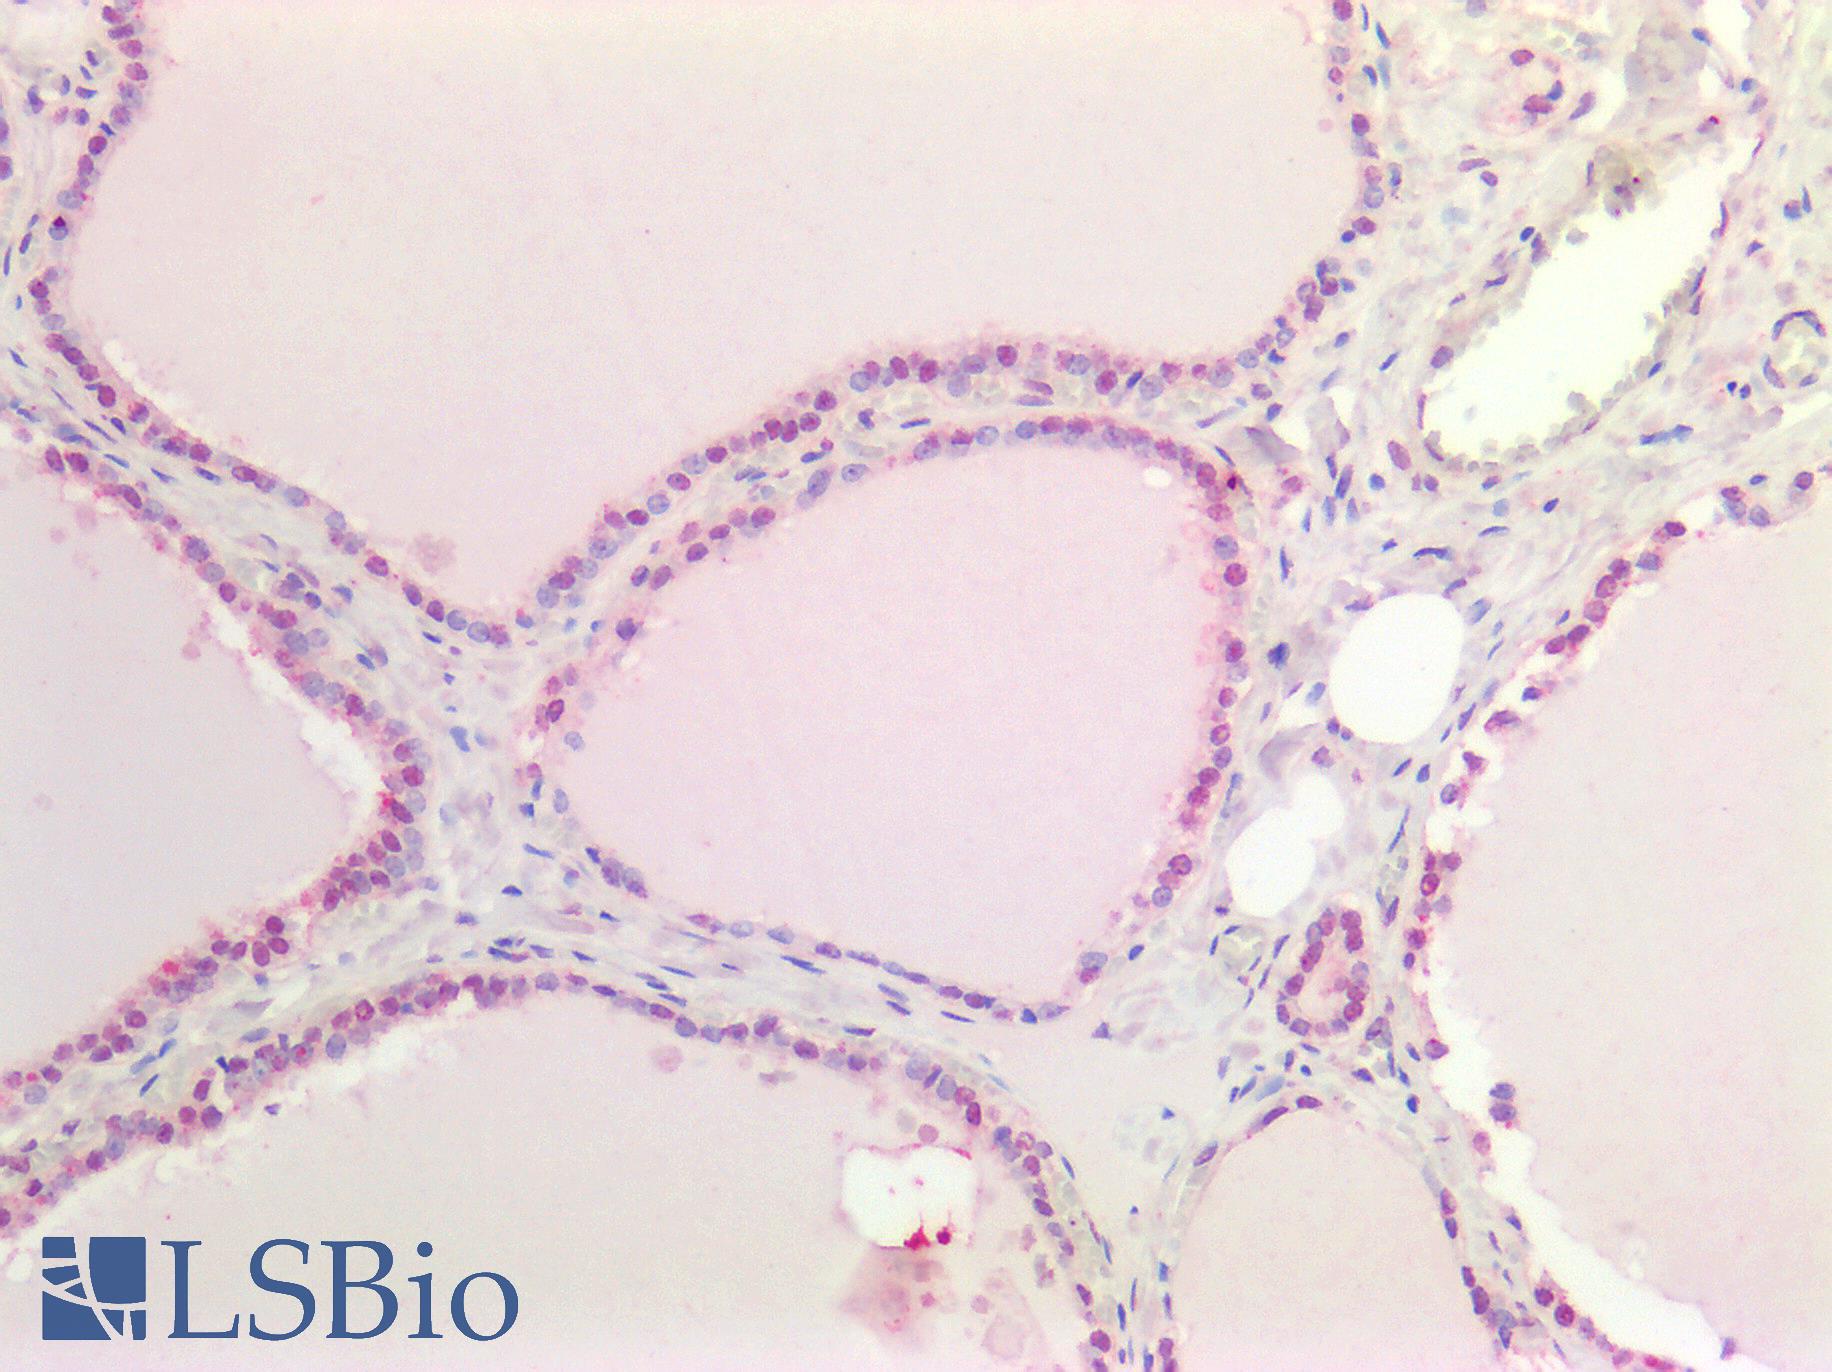 MYC / c-Myc Antibody - Human Thyroid: Formalin-Fixed, Paraffin-Embedded (FFPE)